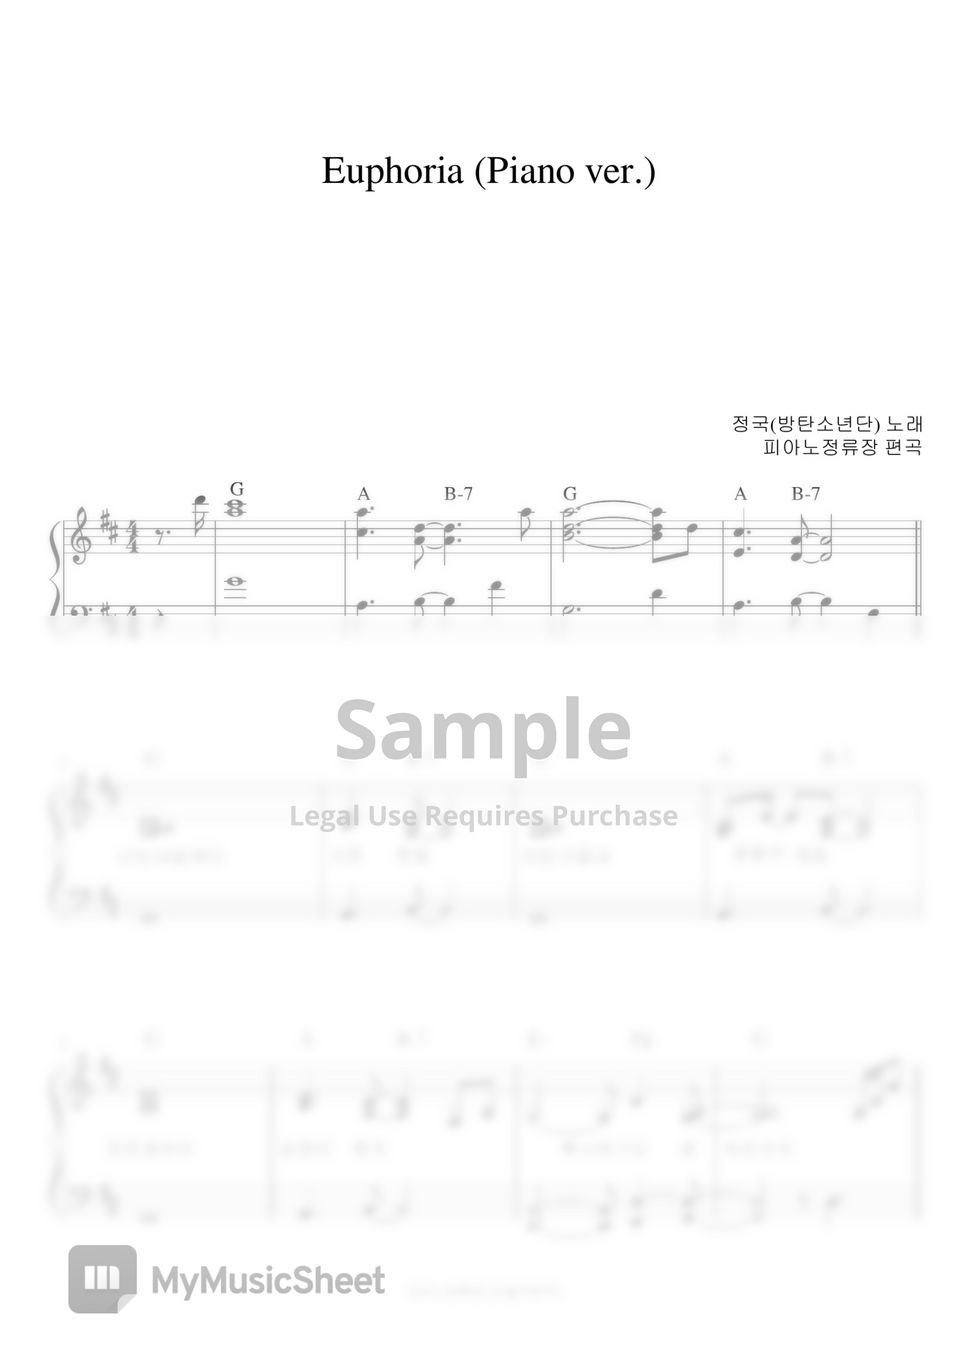 BTS (방탄소년단) - Euphoria (piano ver.) (반주악보) by 피아노정류장